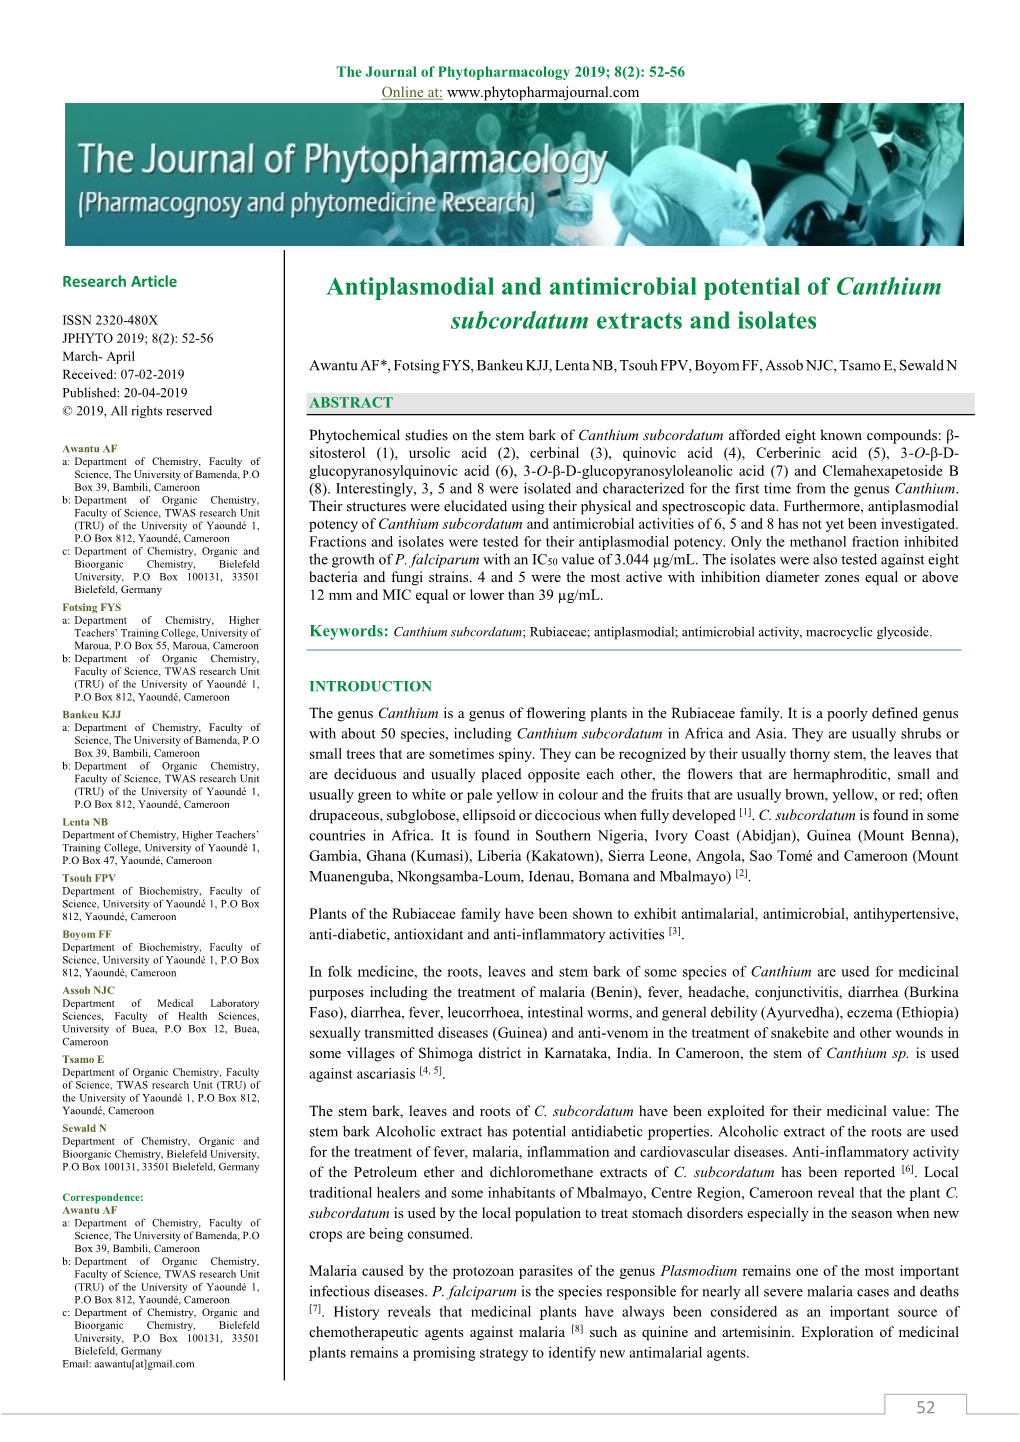 Antiplasmodial and Antimicrobial Potential of Canthium Subcordatum 2015; 4(11):1464-1482